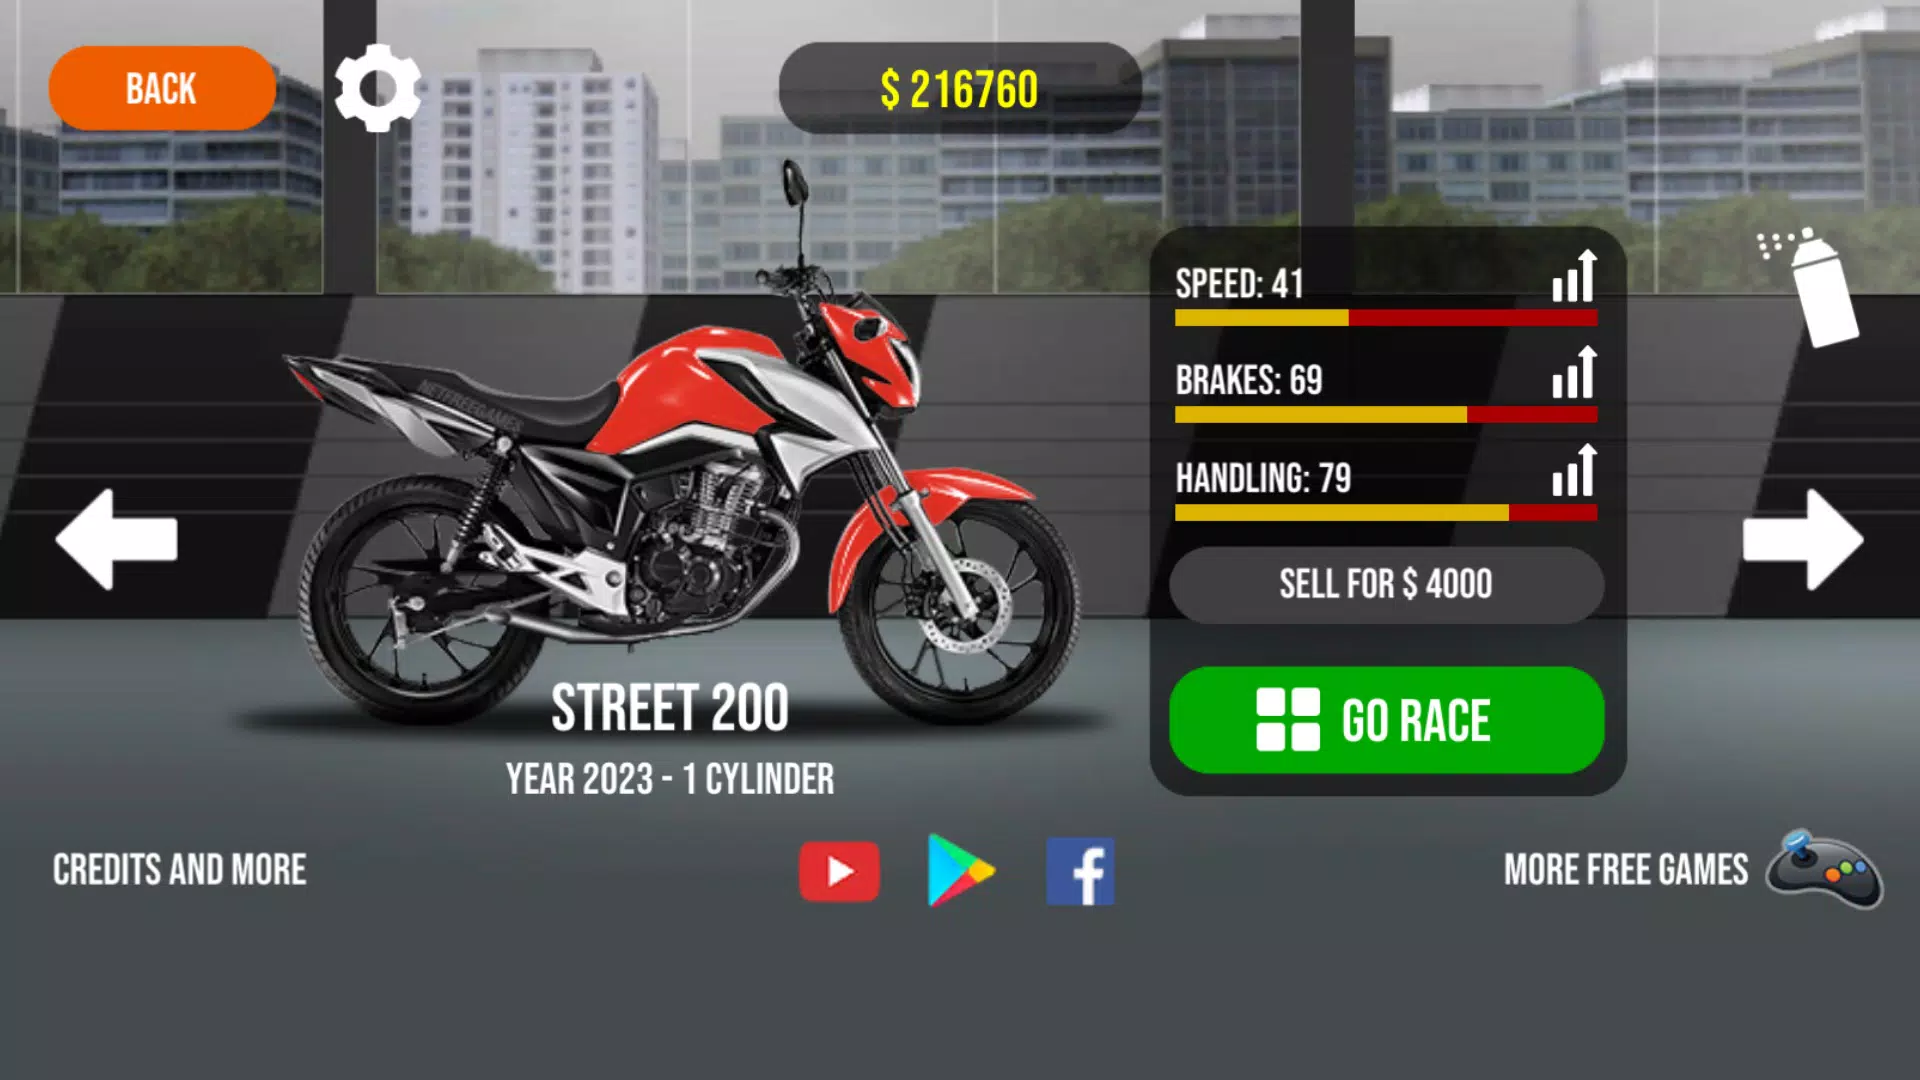 Traffic Racer v3.5 Dinheiro Infinito Apk Mod - W Rop Games Mod